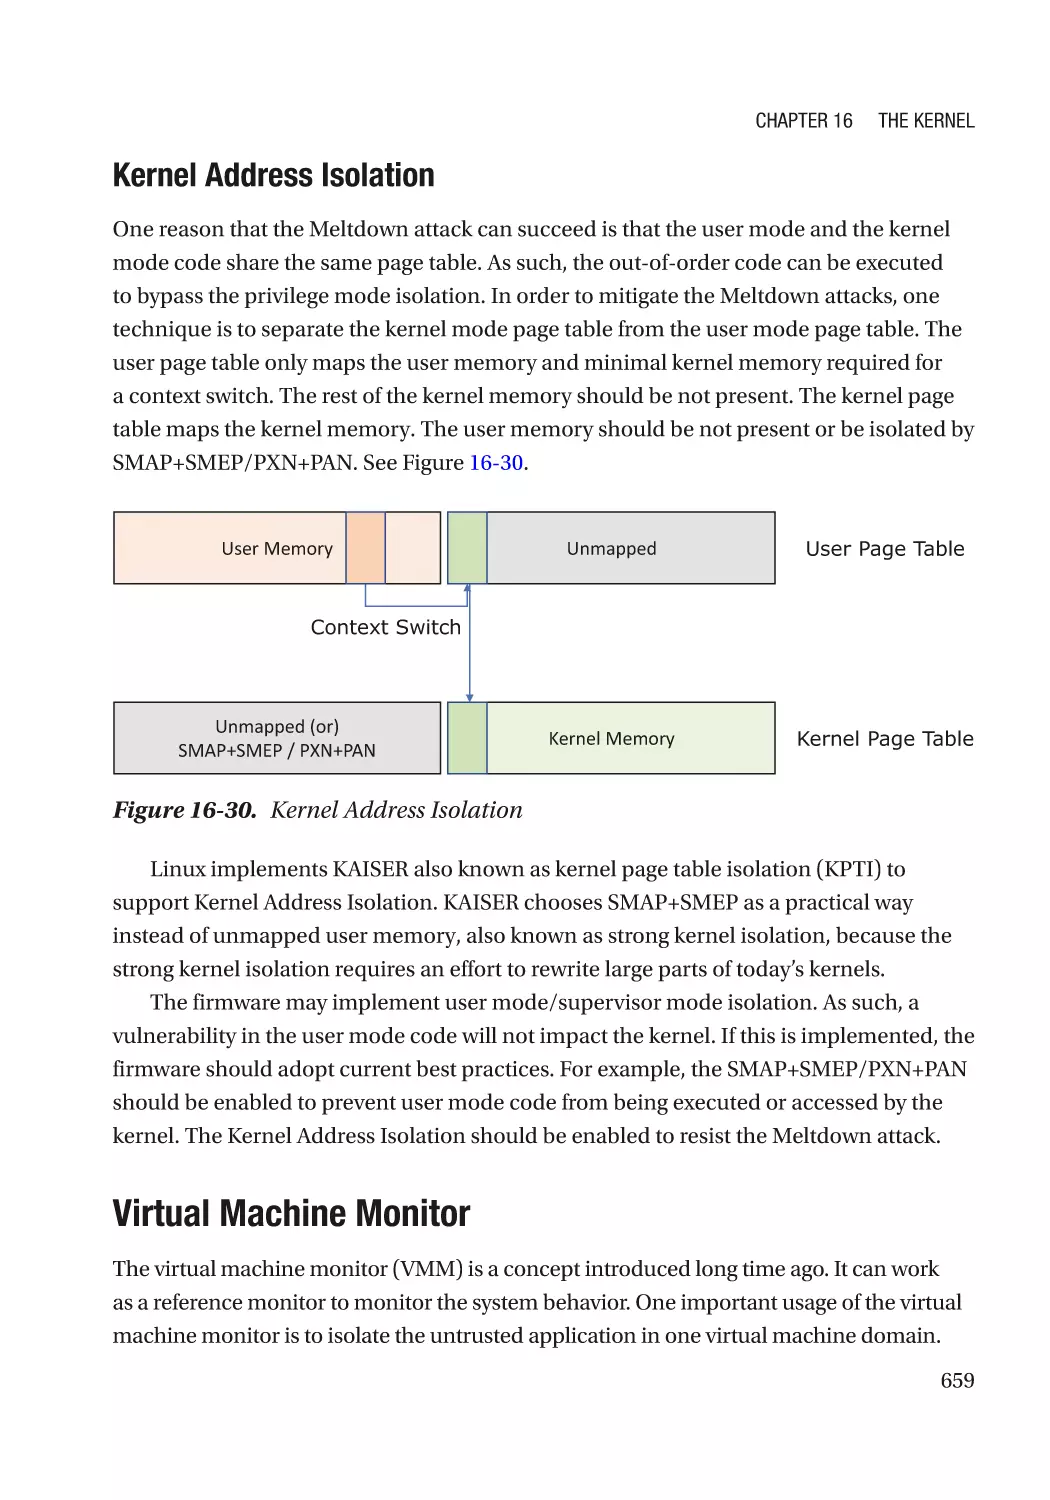 Kernel Address Isolation
Virtual Machine Monitor